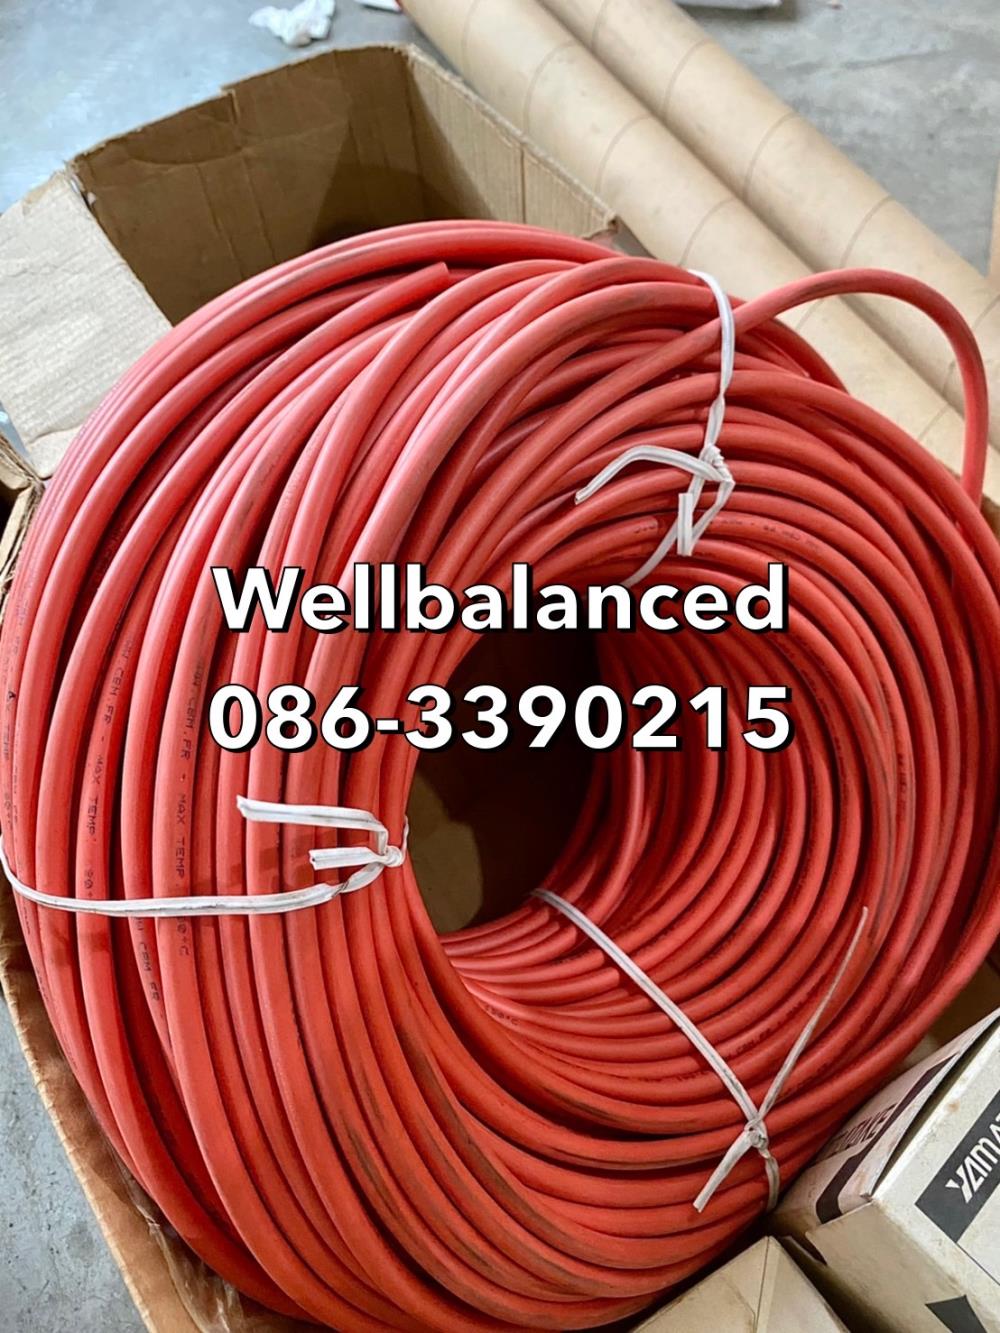 สายไฟไฮโวลต์ ( High Voltage Wire),สายไฟไฮโวลต์ ( High Voltage Wire),สายไฟไฮโวลต์ ( High Voltage Wire),Machinery and Process Equipment/Machinery/Wire